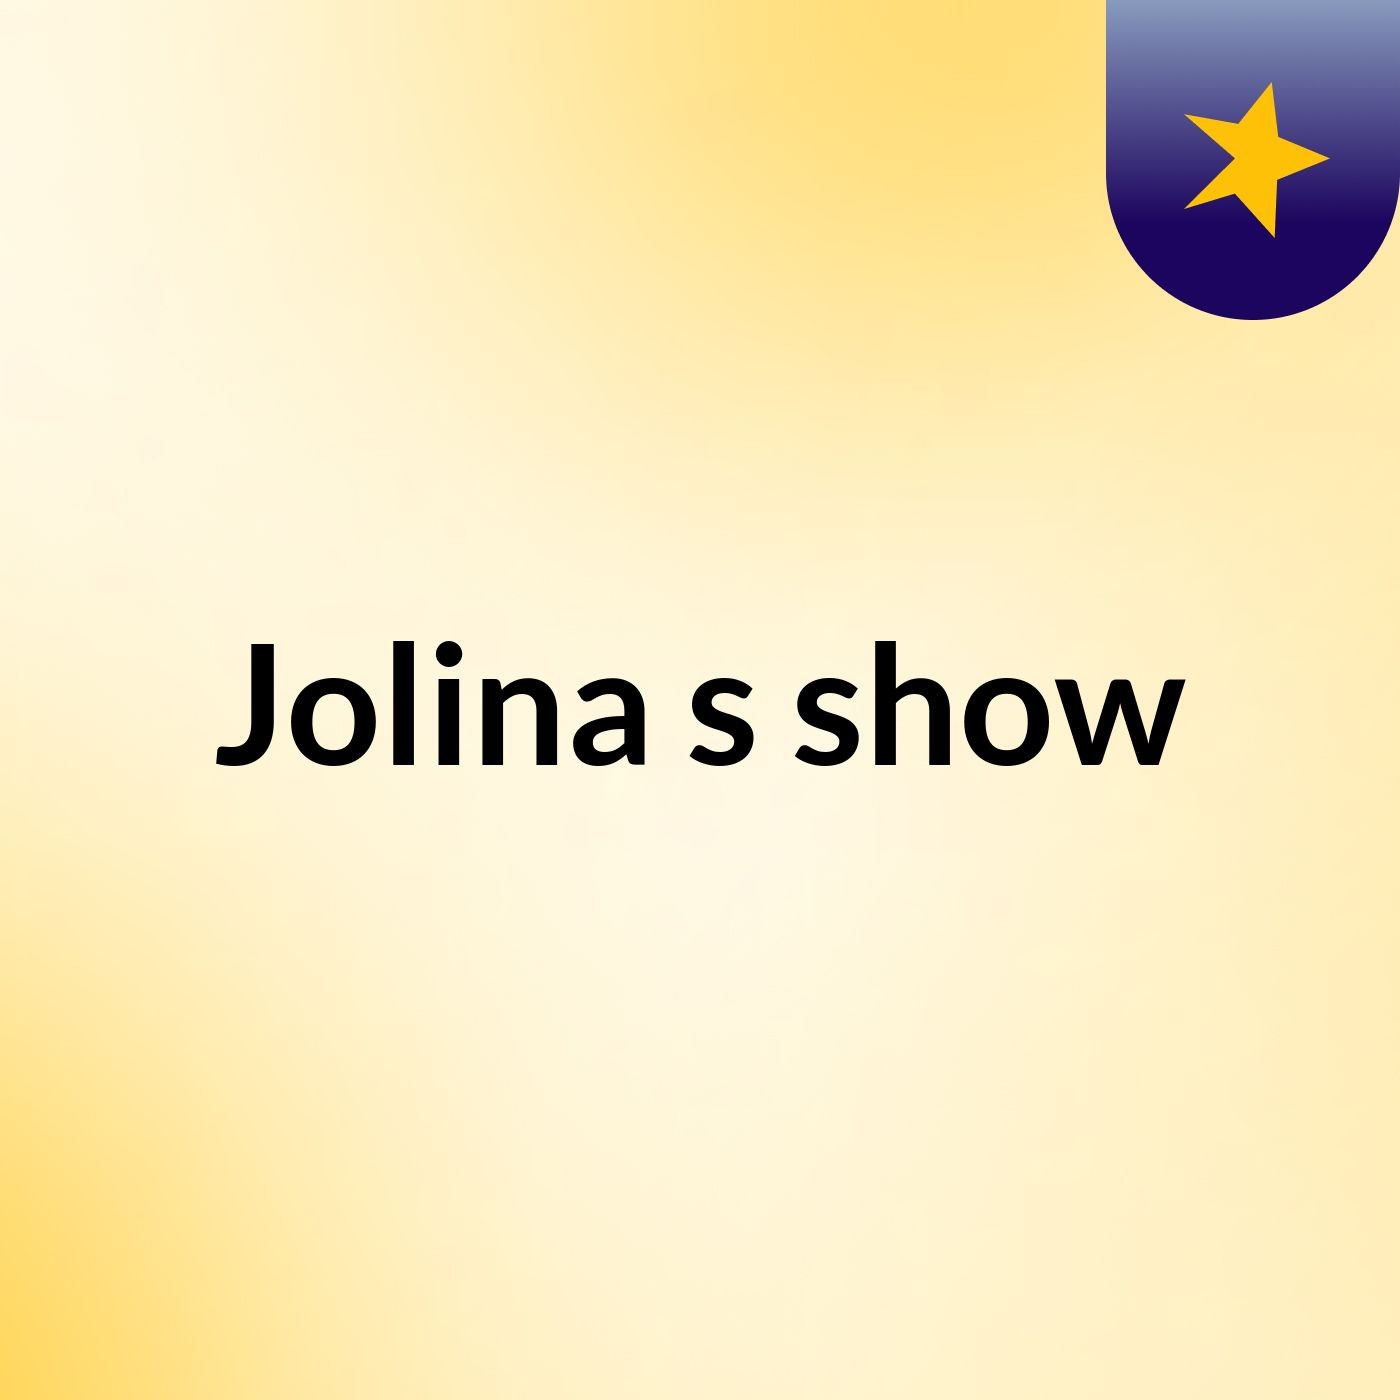 Jolina's show